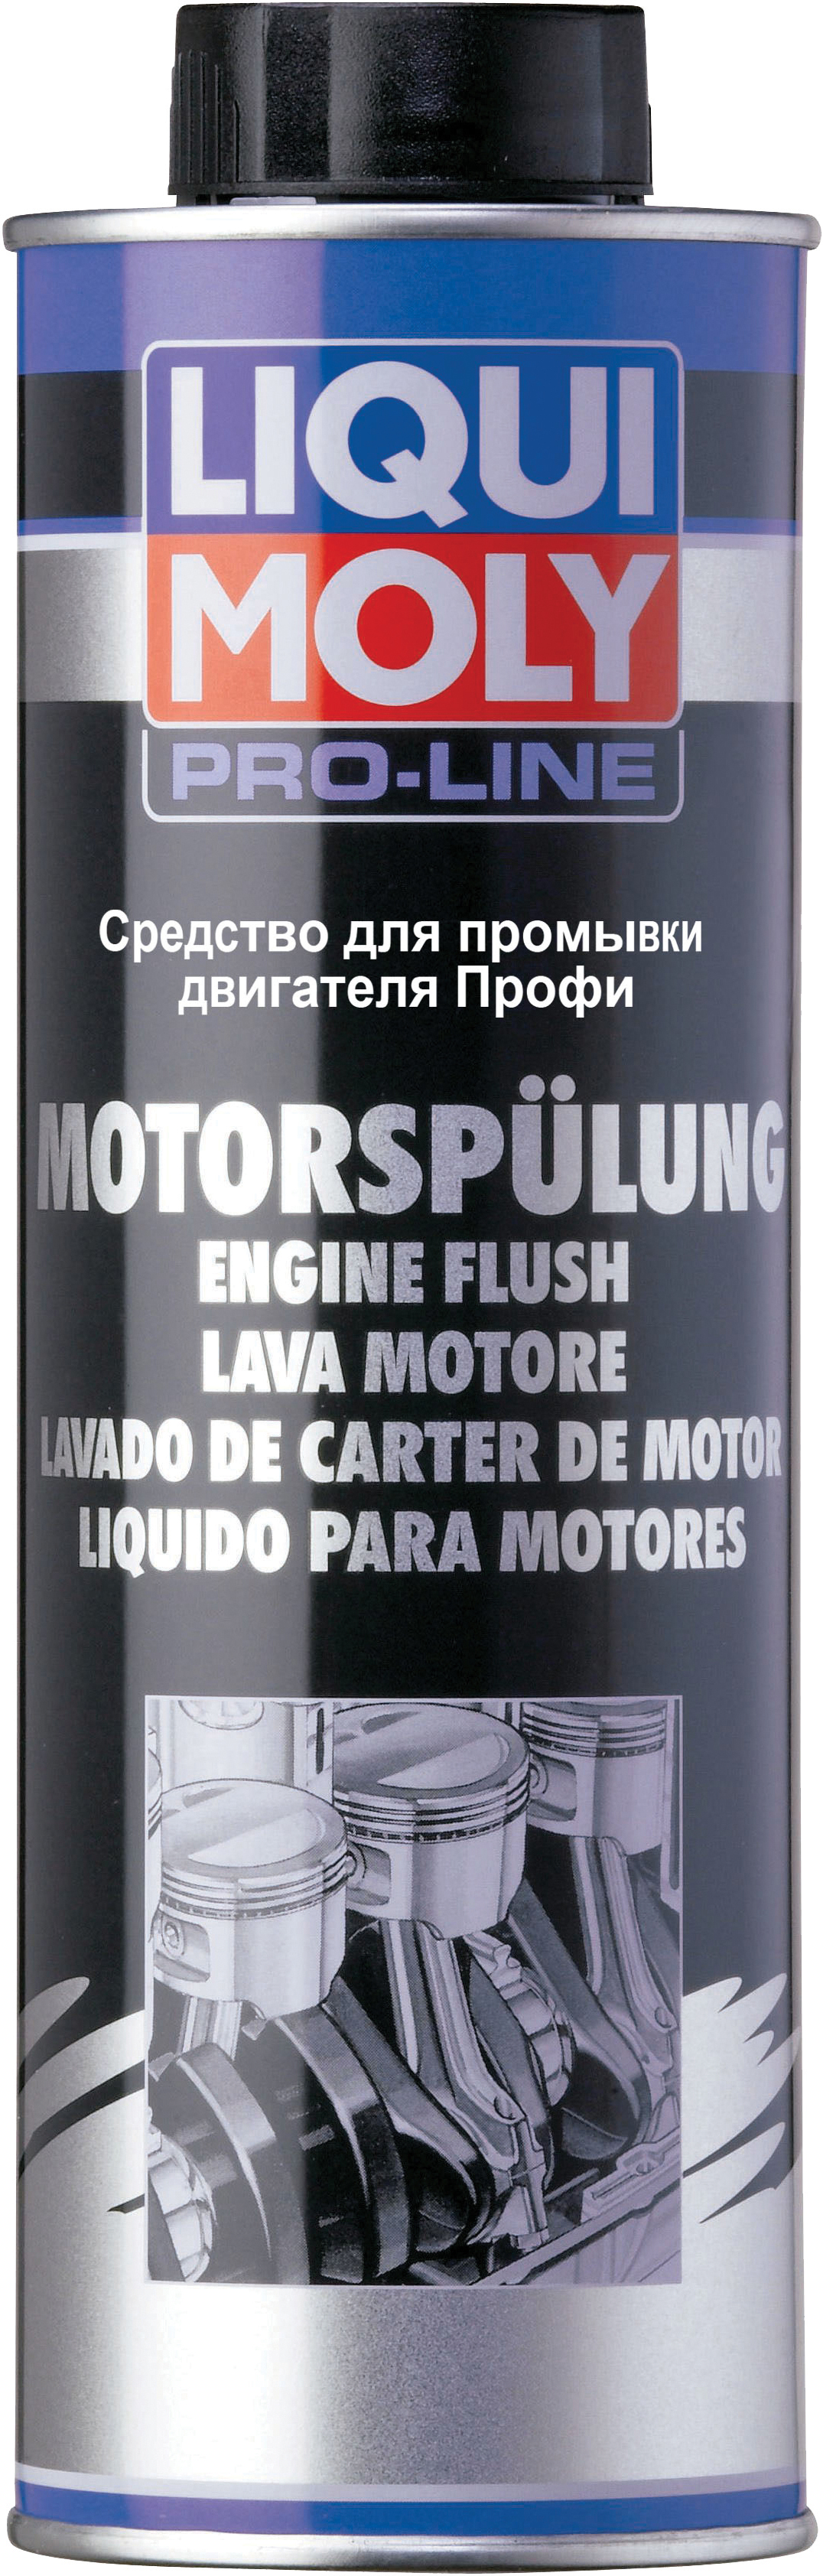 Средство для промывки двигателя Профи Pro-Line Motorspulung, 500мл - Liqui Moly 7507